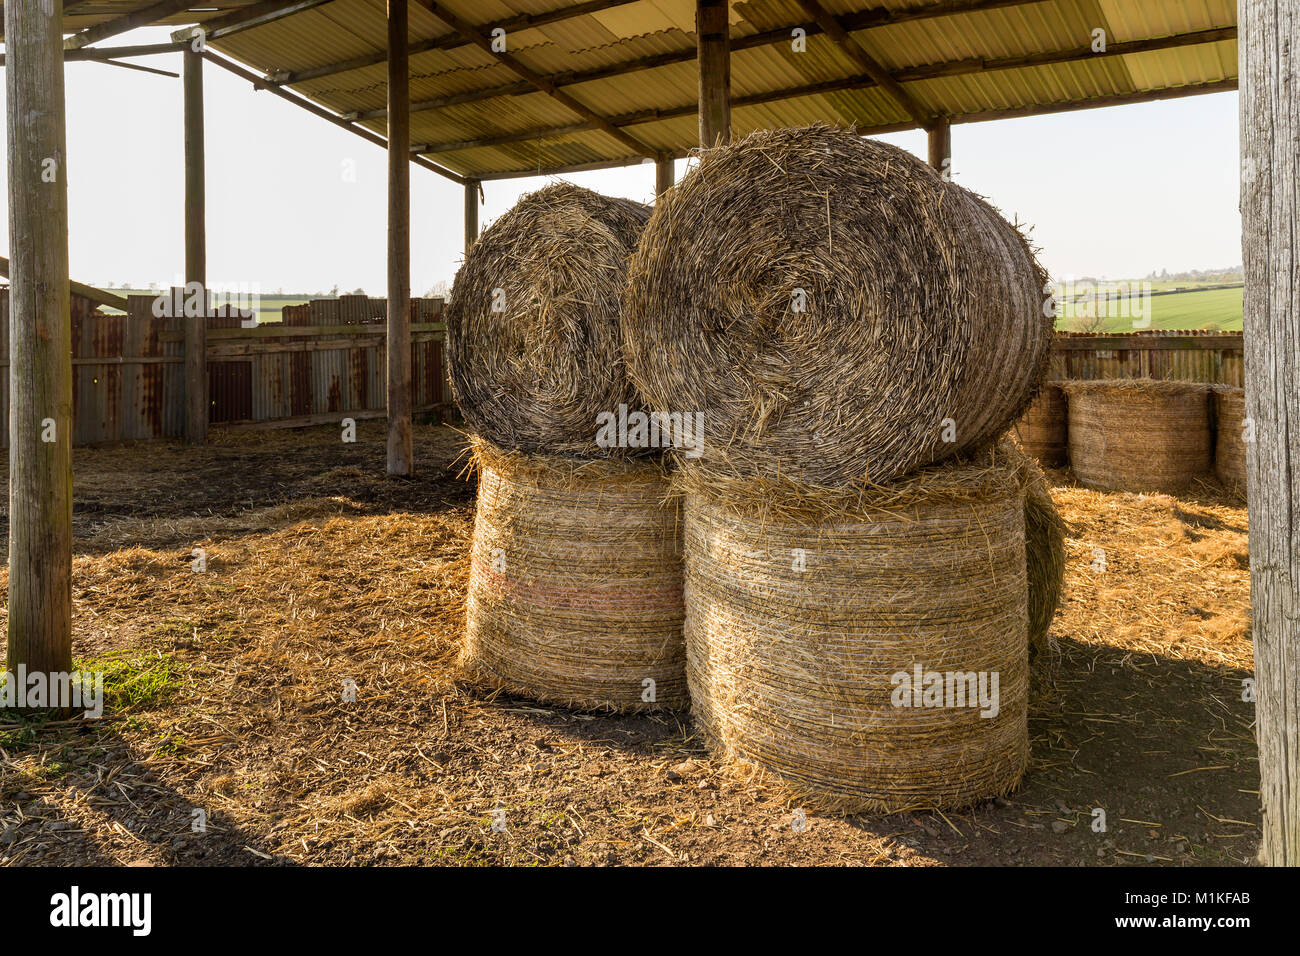 Une image montrant des balles de foin empilées dans une grange ouverte. Banque D'Images